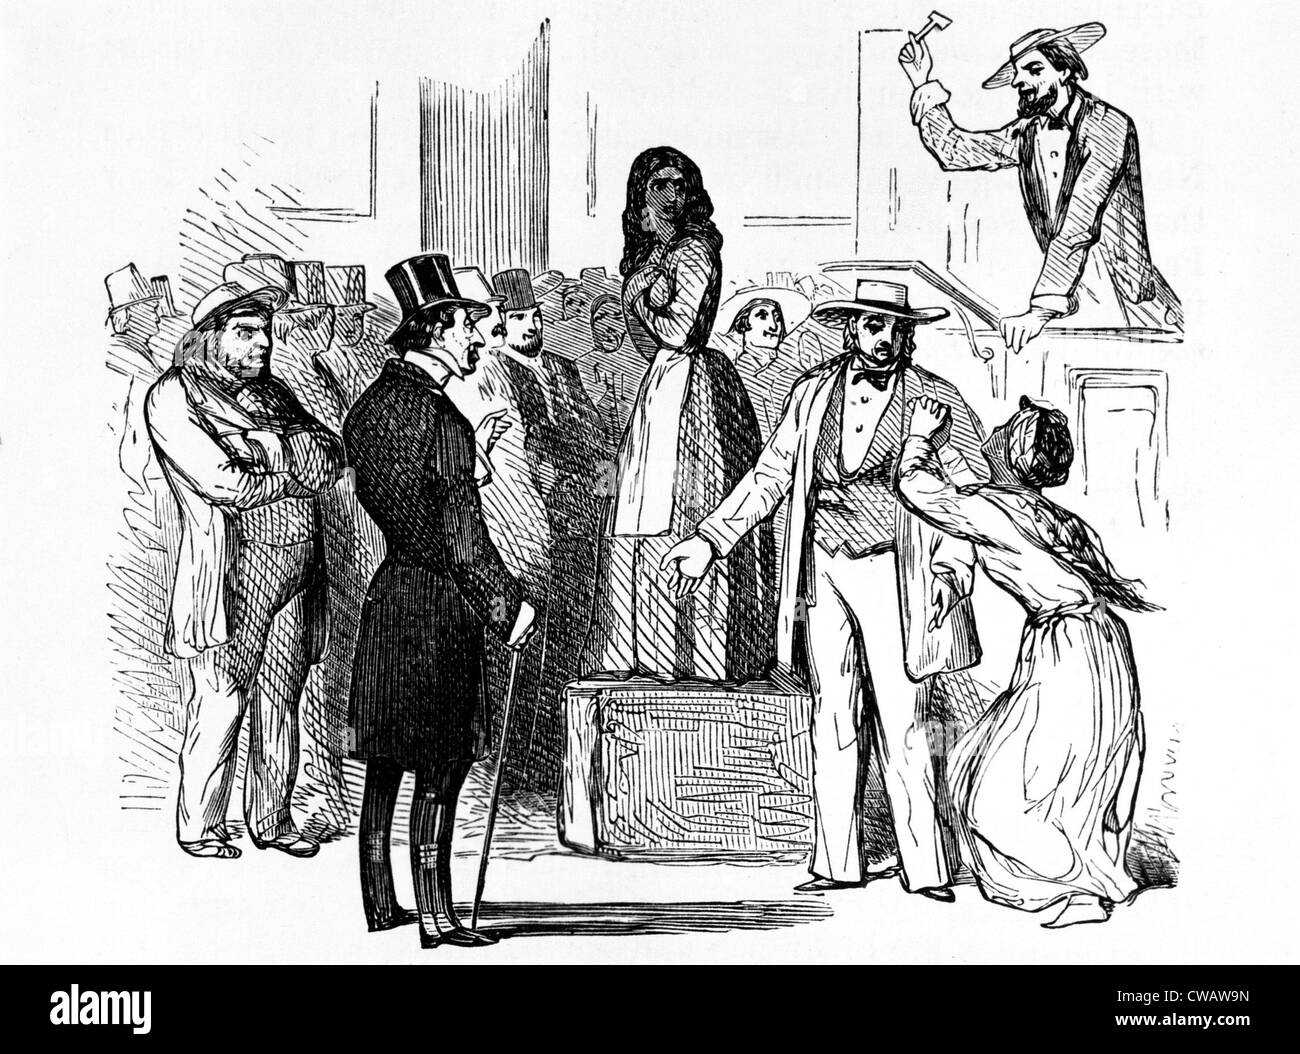 Subasta de esclavos en el sur de Estados Unidos, a principios de 1800. Cortesía: CSU Archives / Everett Collection Foto de stock